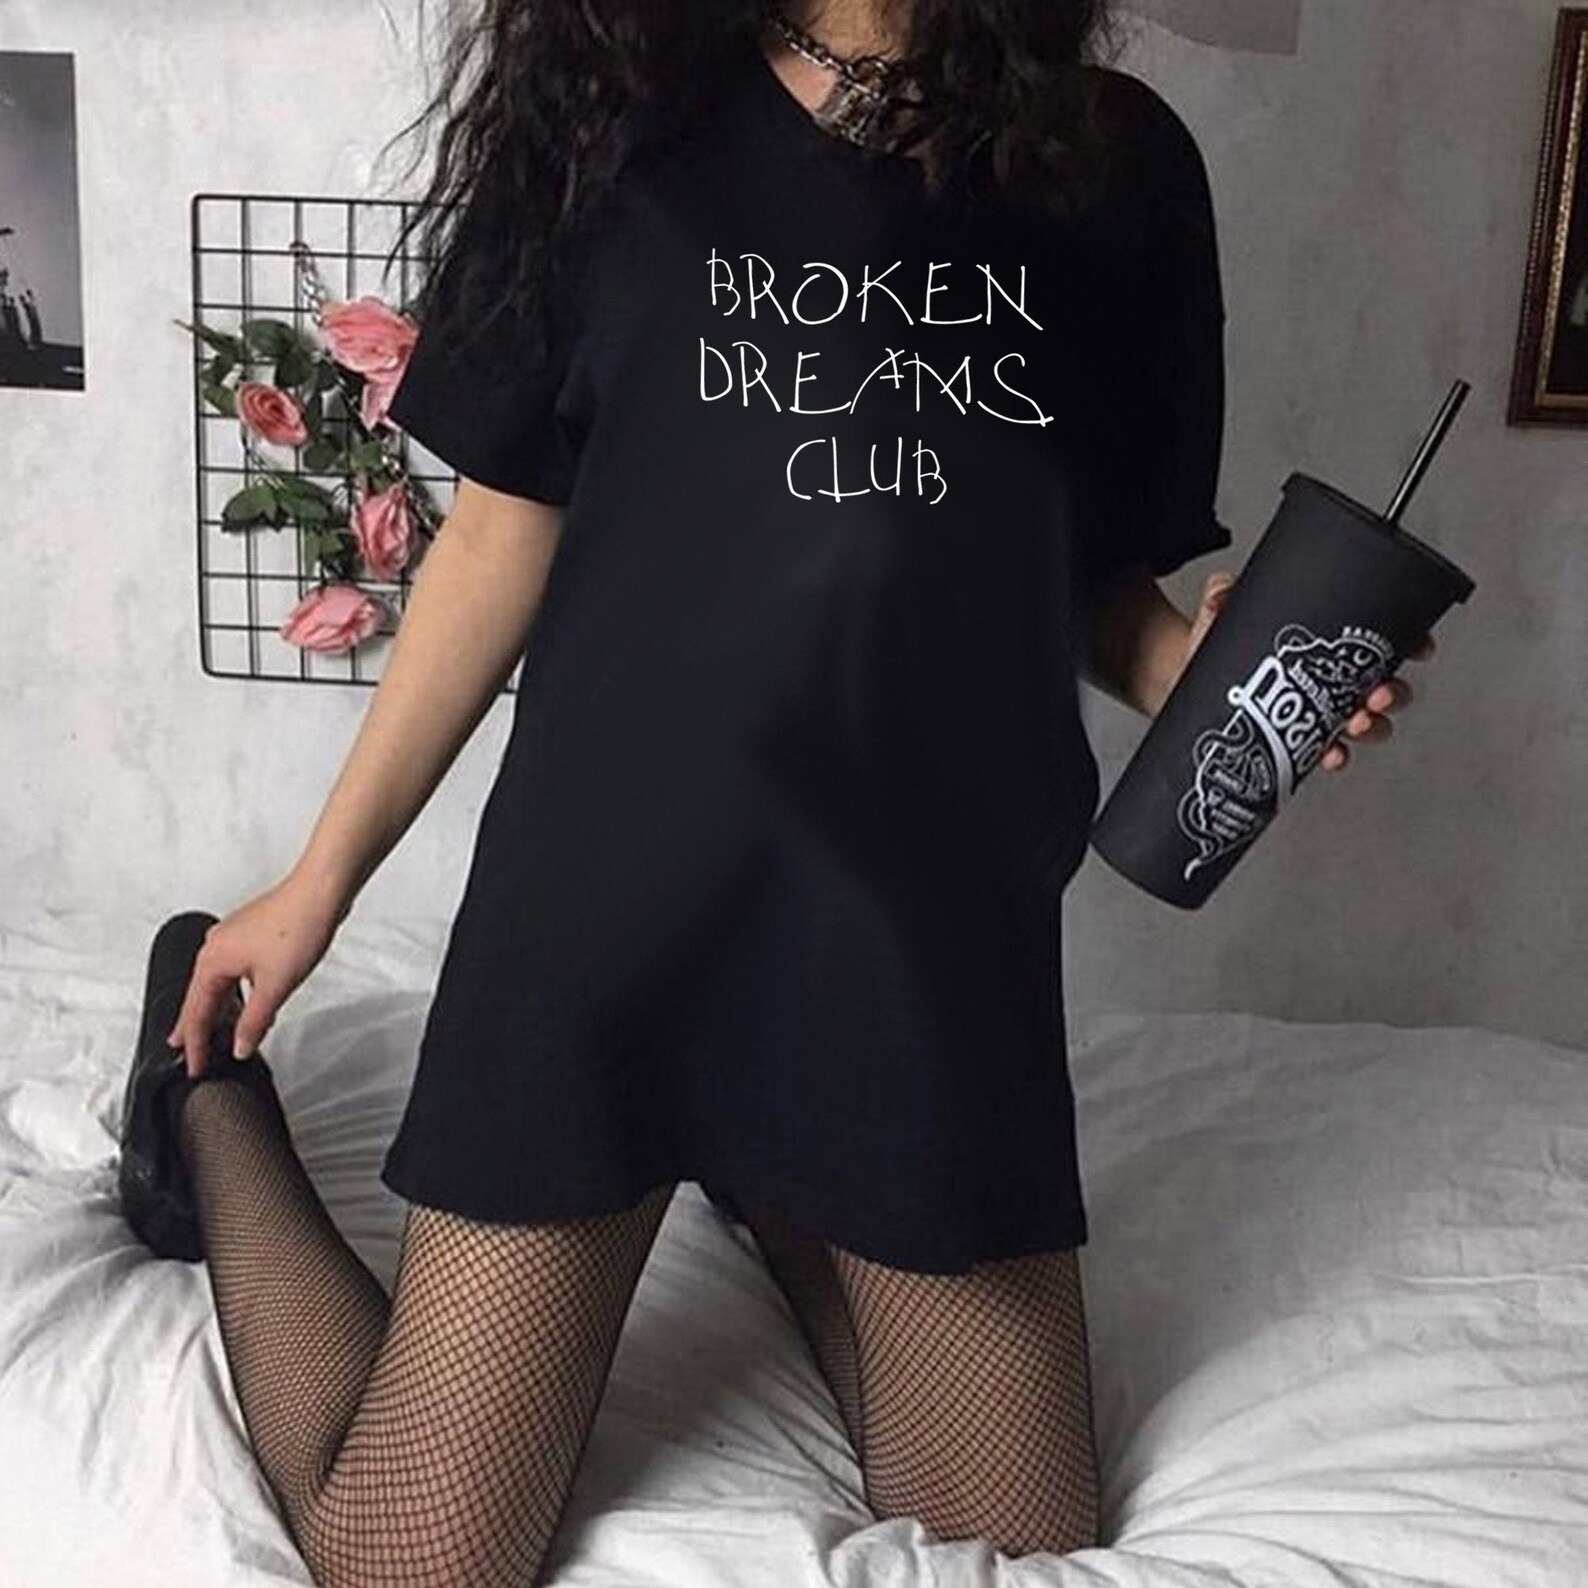 Broken dreams club shirt E Girl Clothing Vsco Girl Shirt E | Etsy